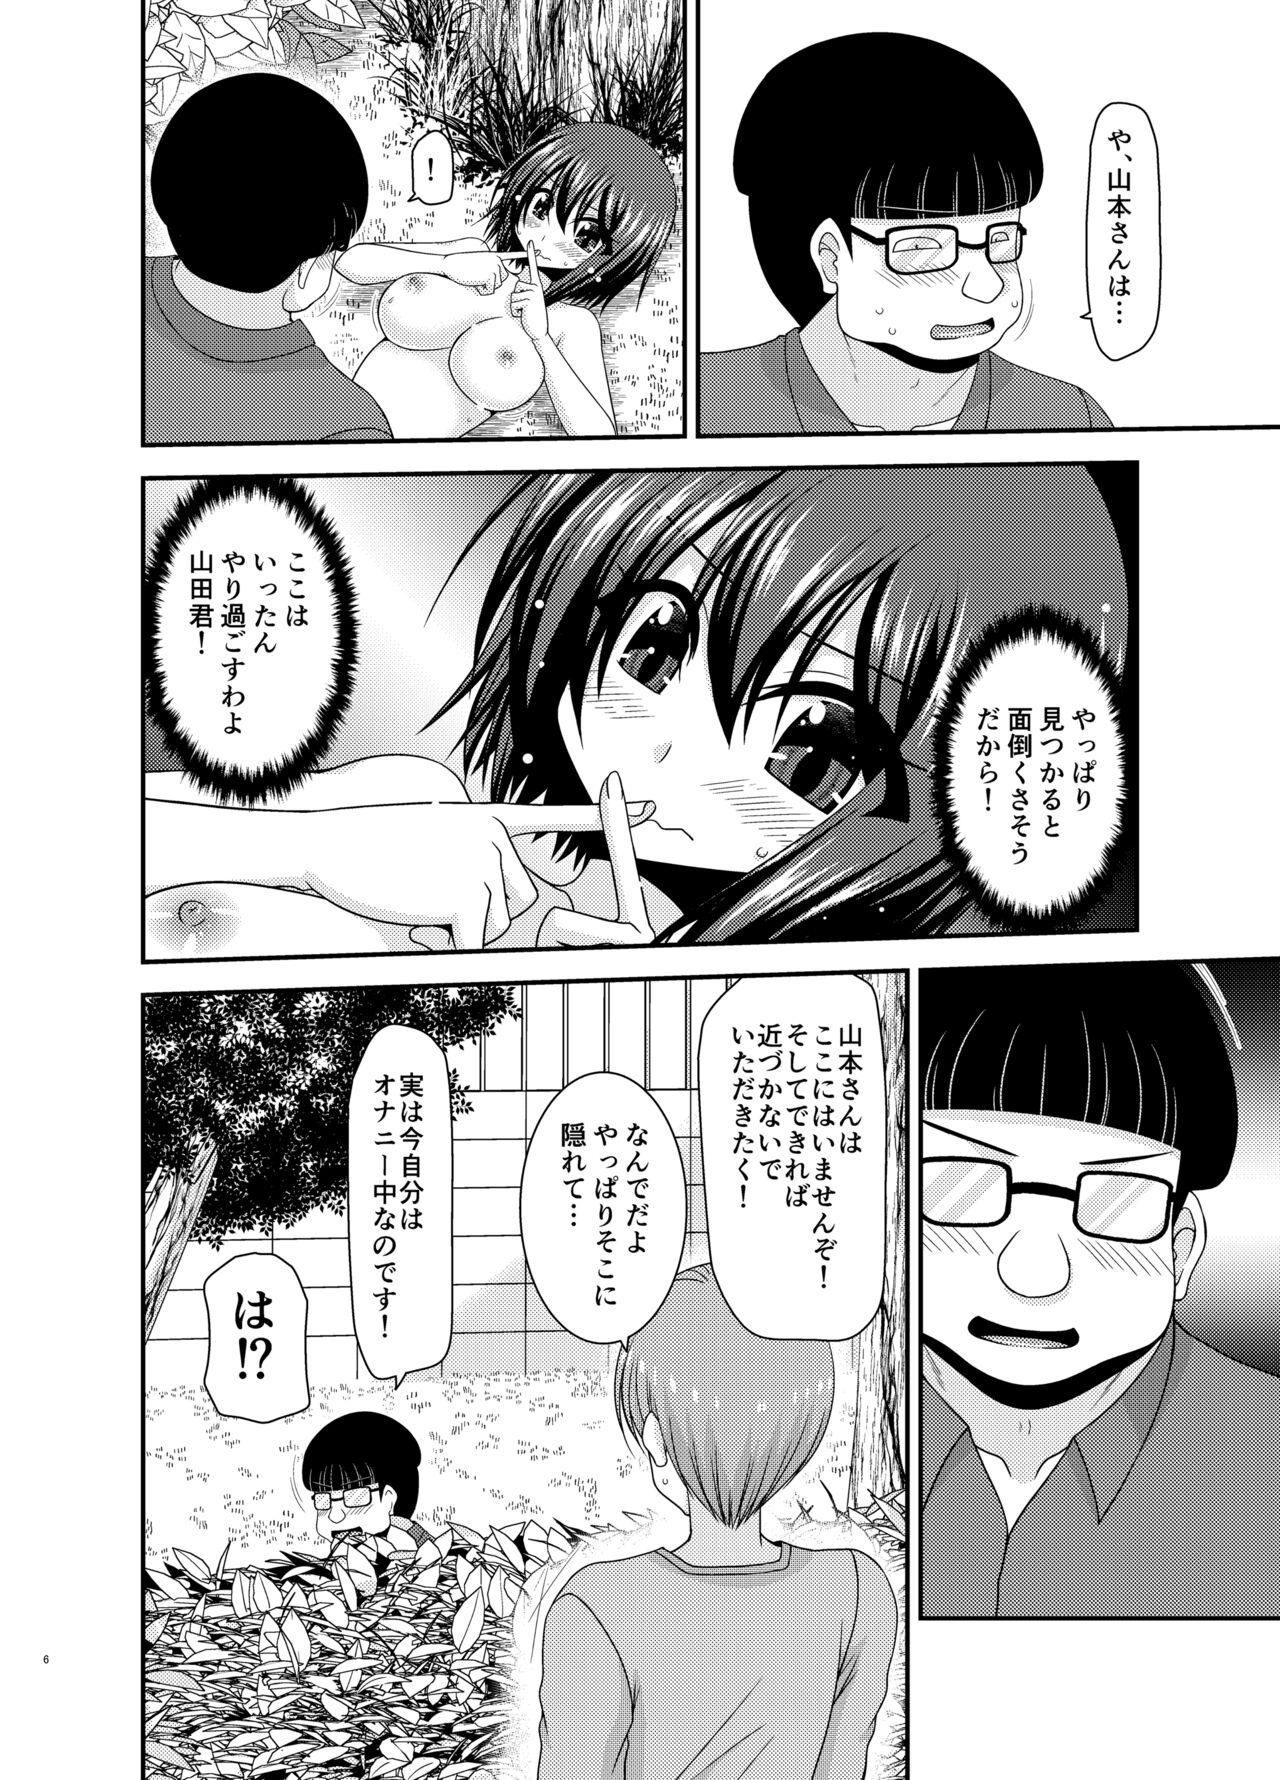 Bwc Netorare Roshutsu Shoujo 2 - Original 8teen - Page 5